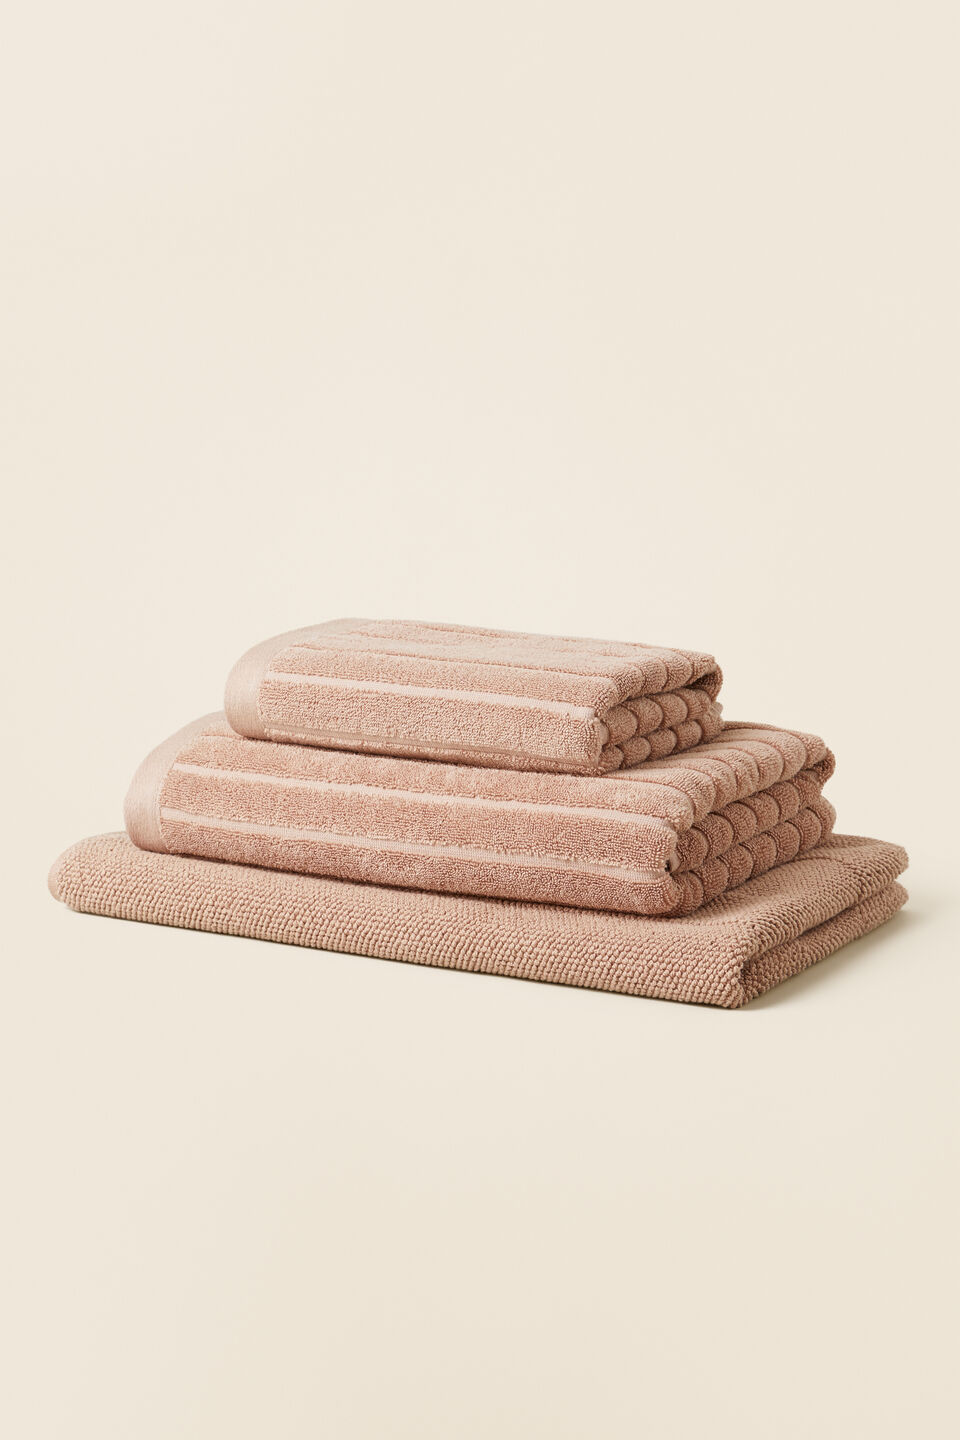 Cotton Stripe Bath Towel   Chalk Pink